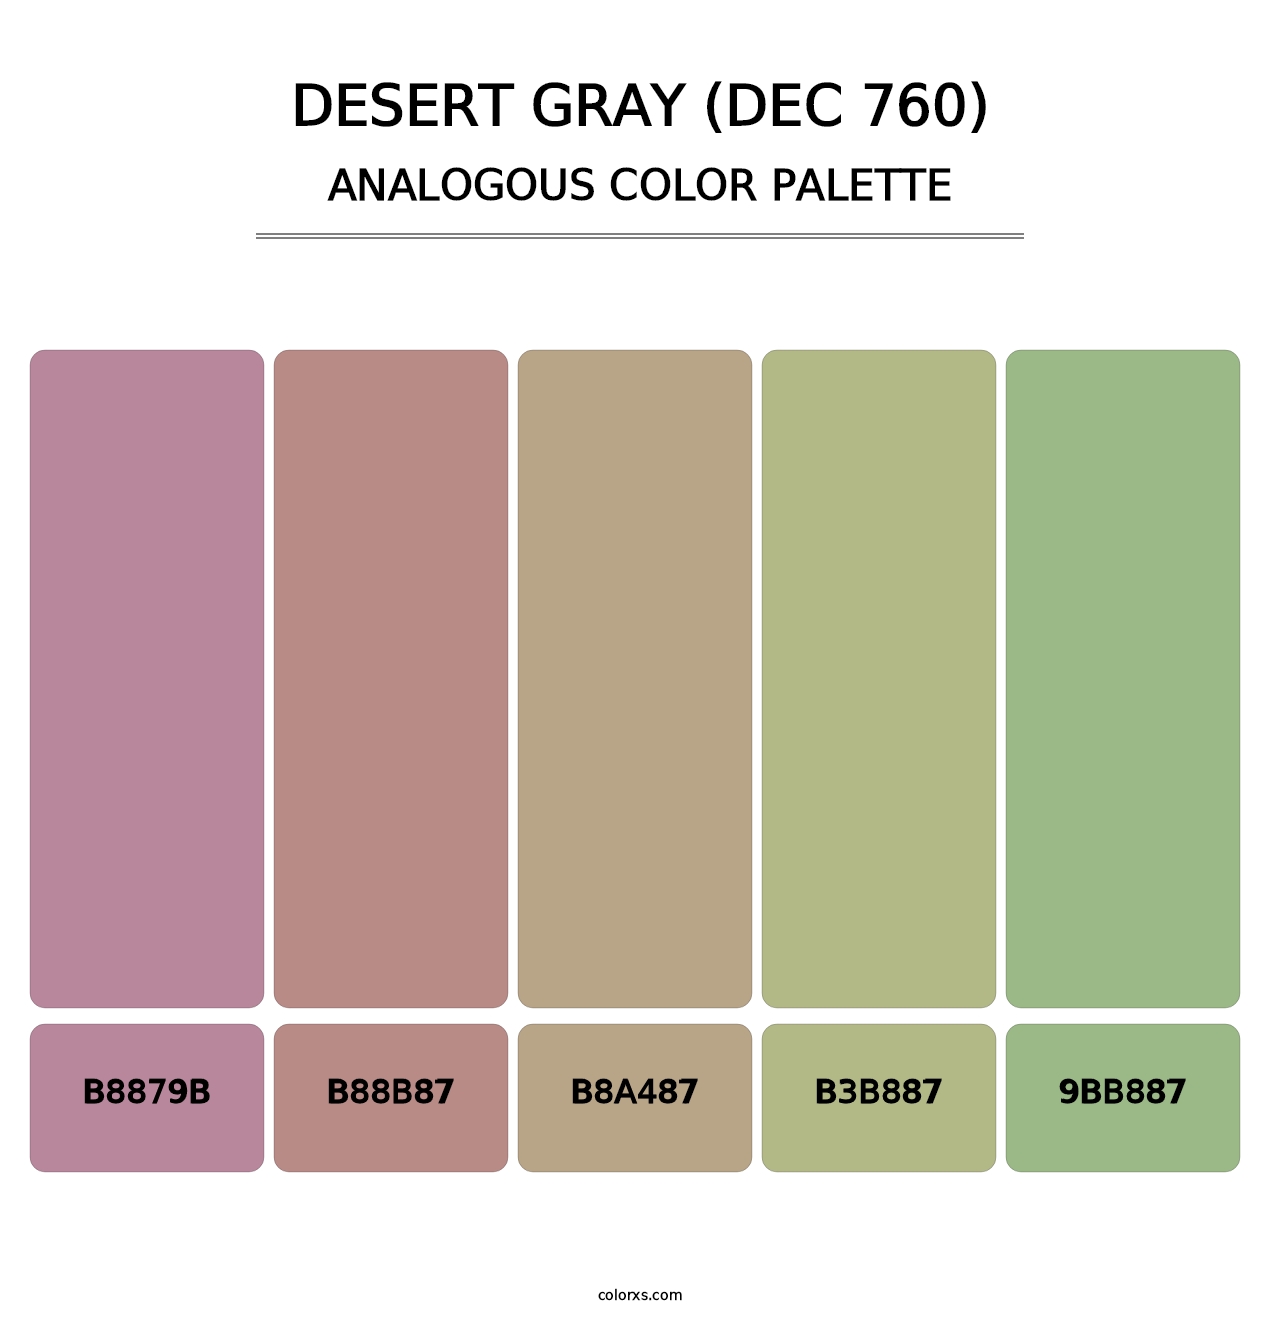 Desert Gray (DEC 760) - Analogous Color Palette